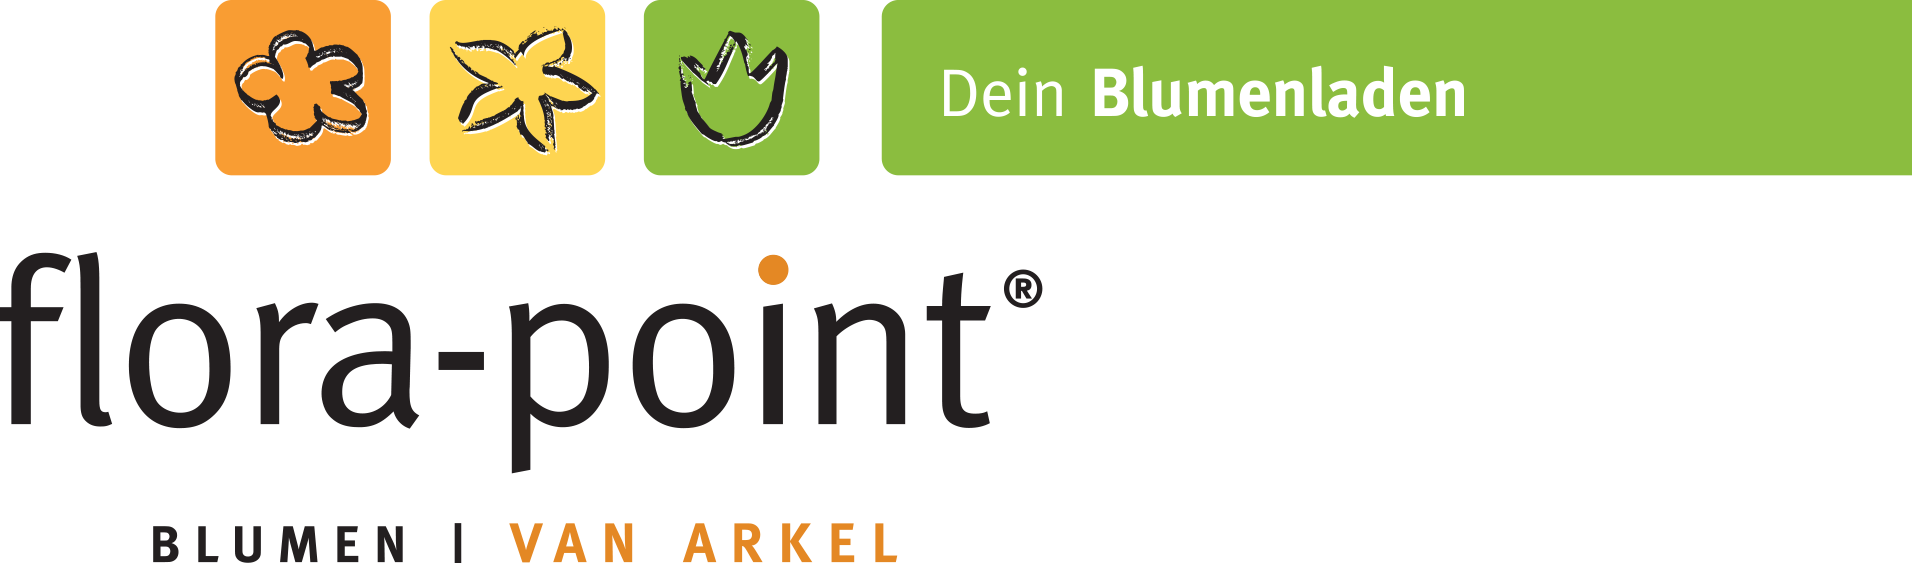 Bild 1 flora-point Blumenshop GmbH in Hamm